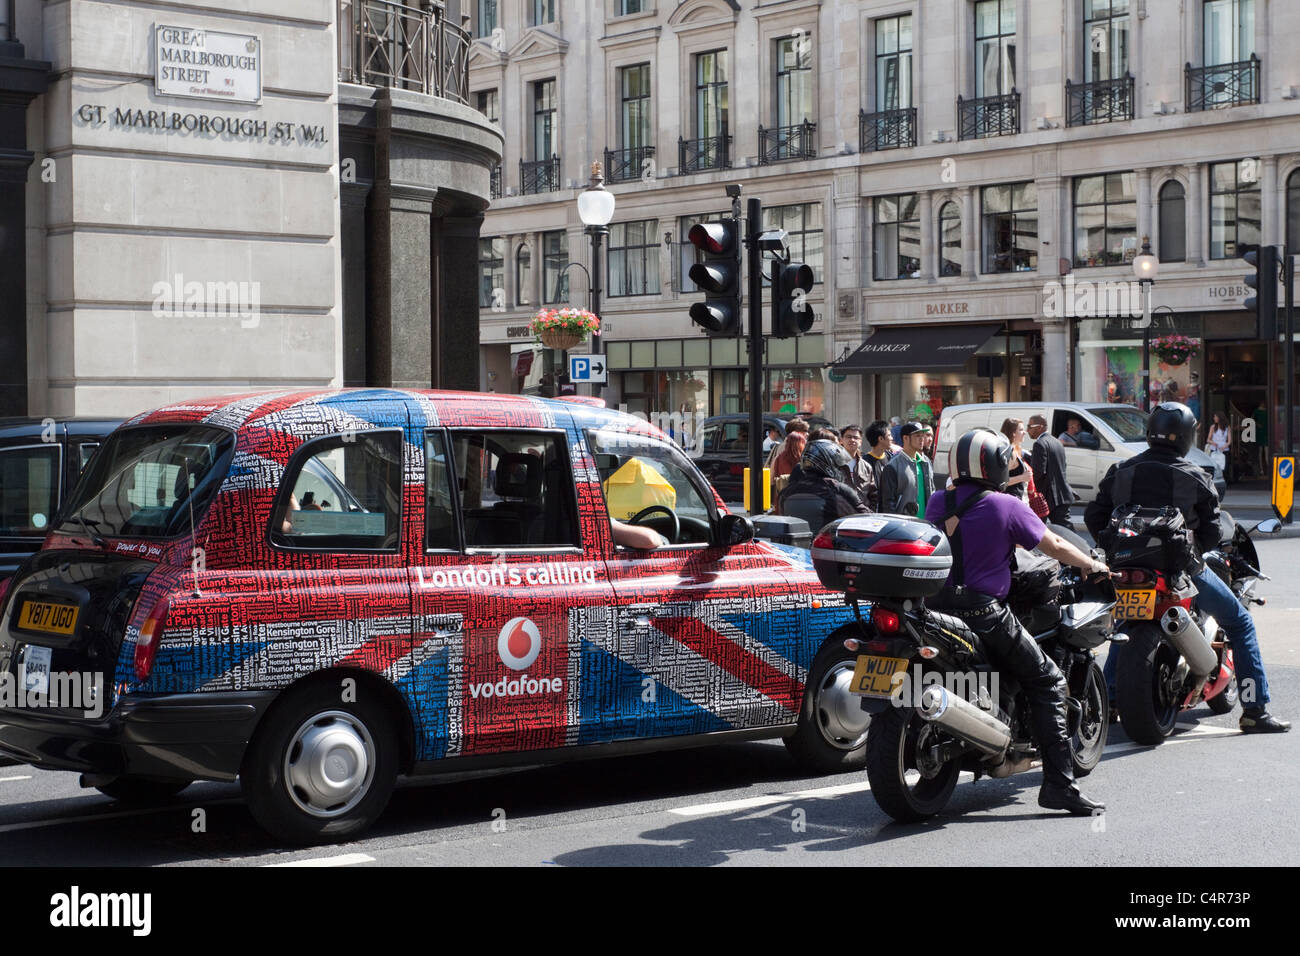 London taxi et motos sur Great Marlborough Street, Londres, Angleterre Banque D'Images